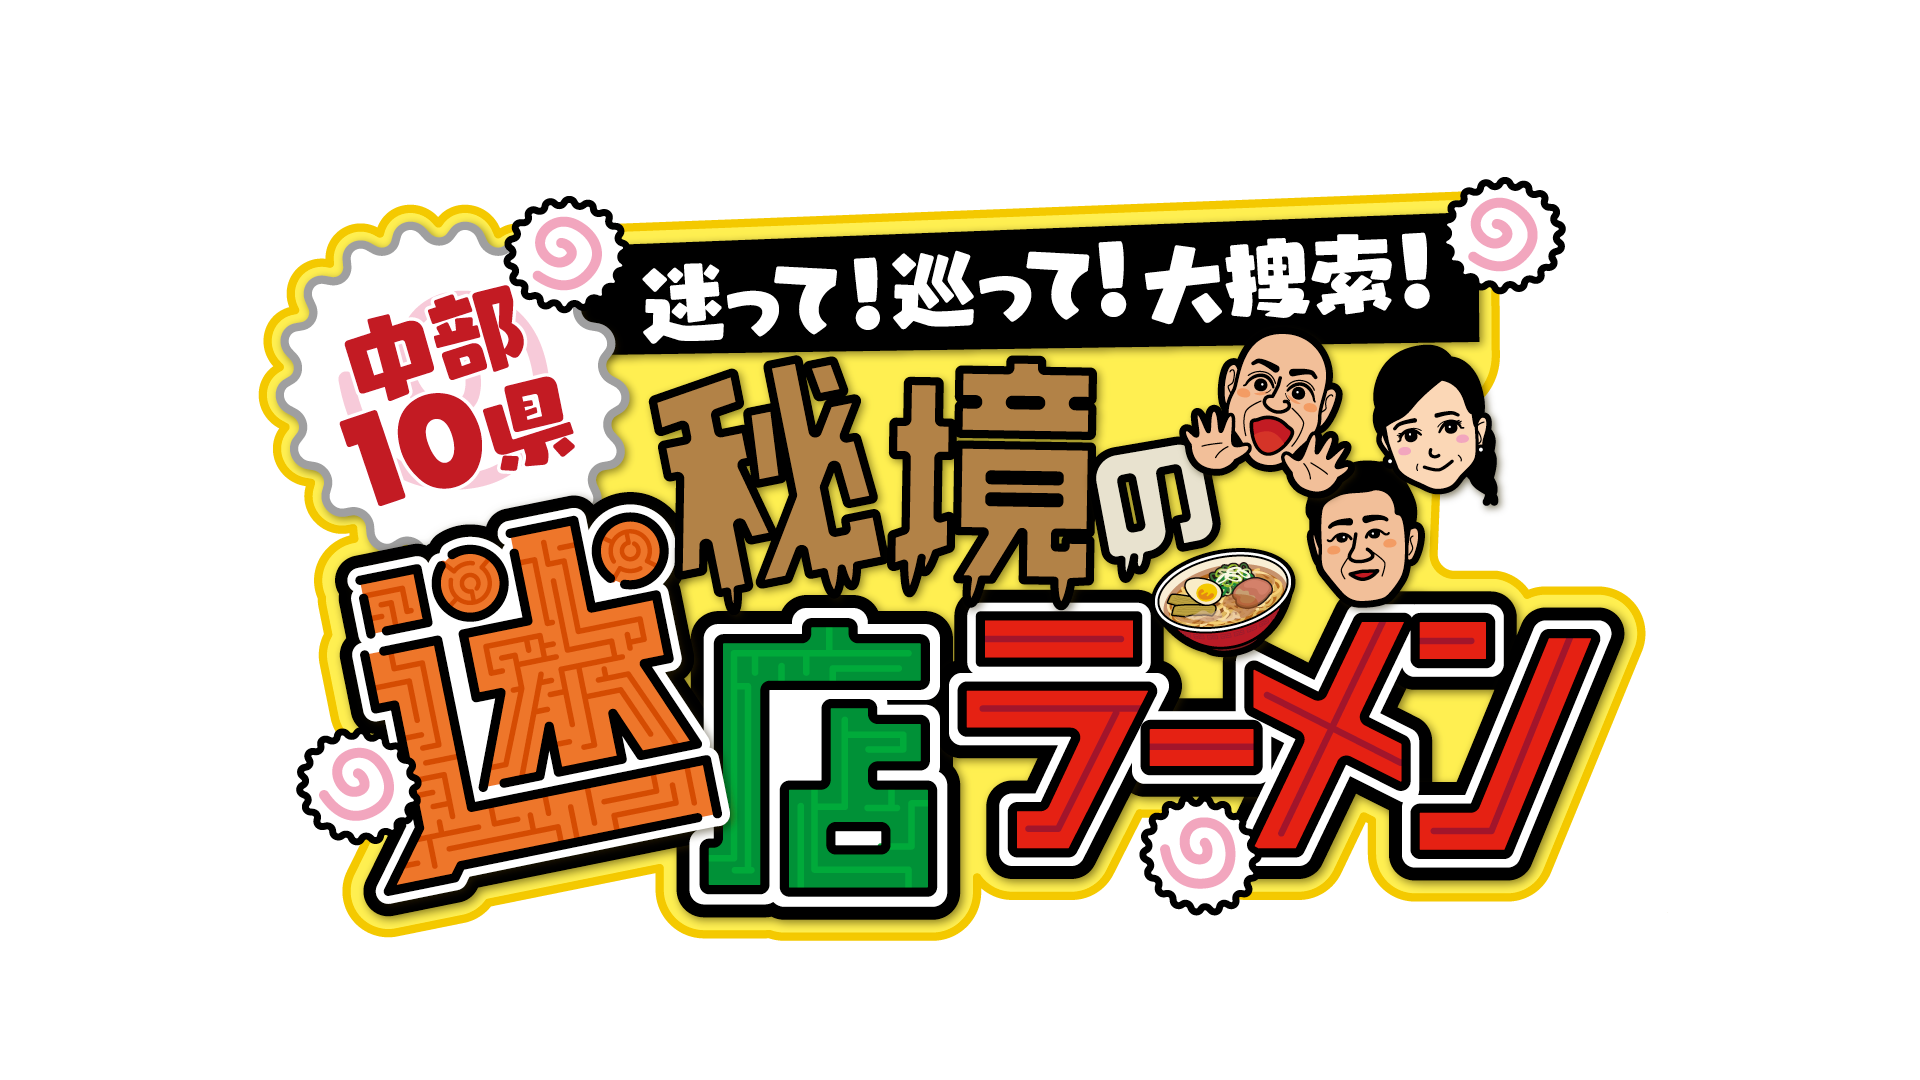 音楽業界向けUGCマーケティングプラットフォーム「バズチャレ！」にて、TENSONG新曲「東京イリュージョン」のTikTok投稿キャンペーンが開始